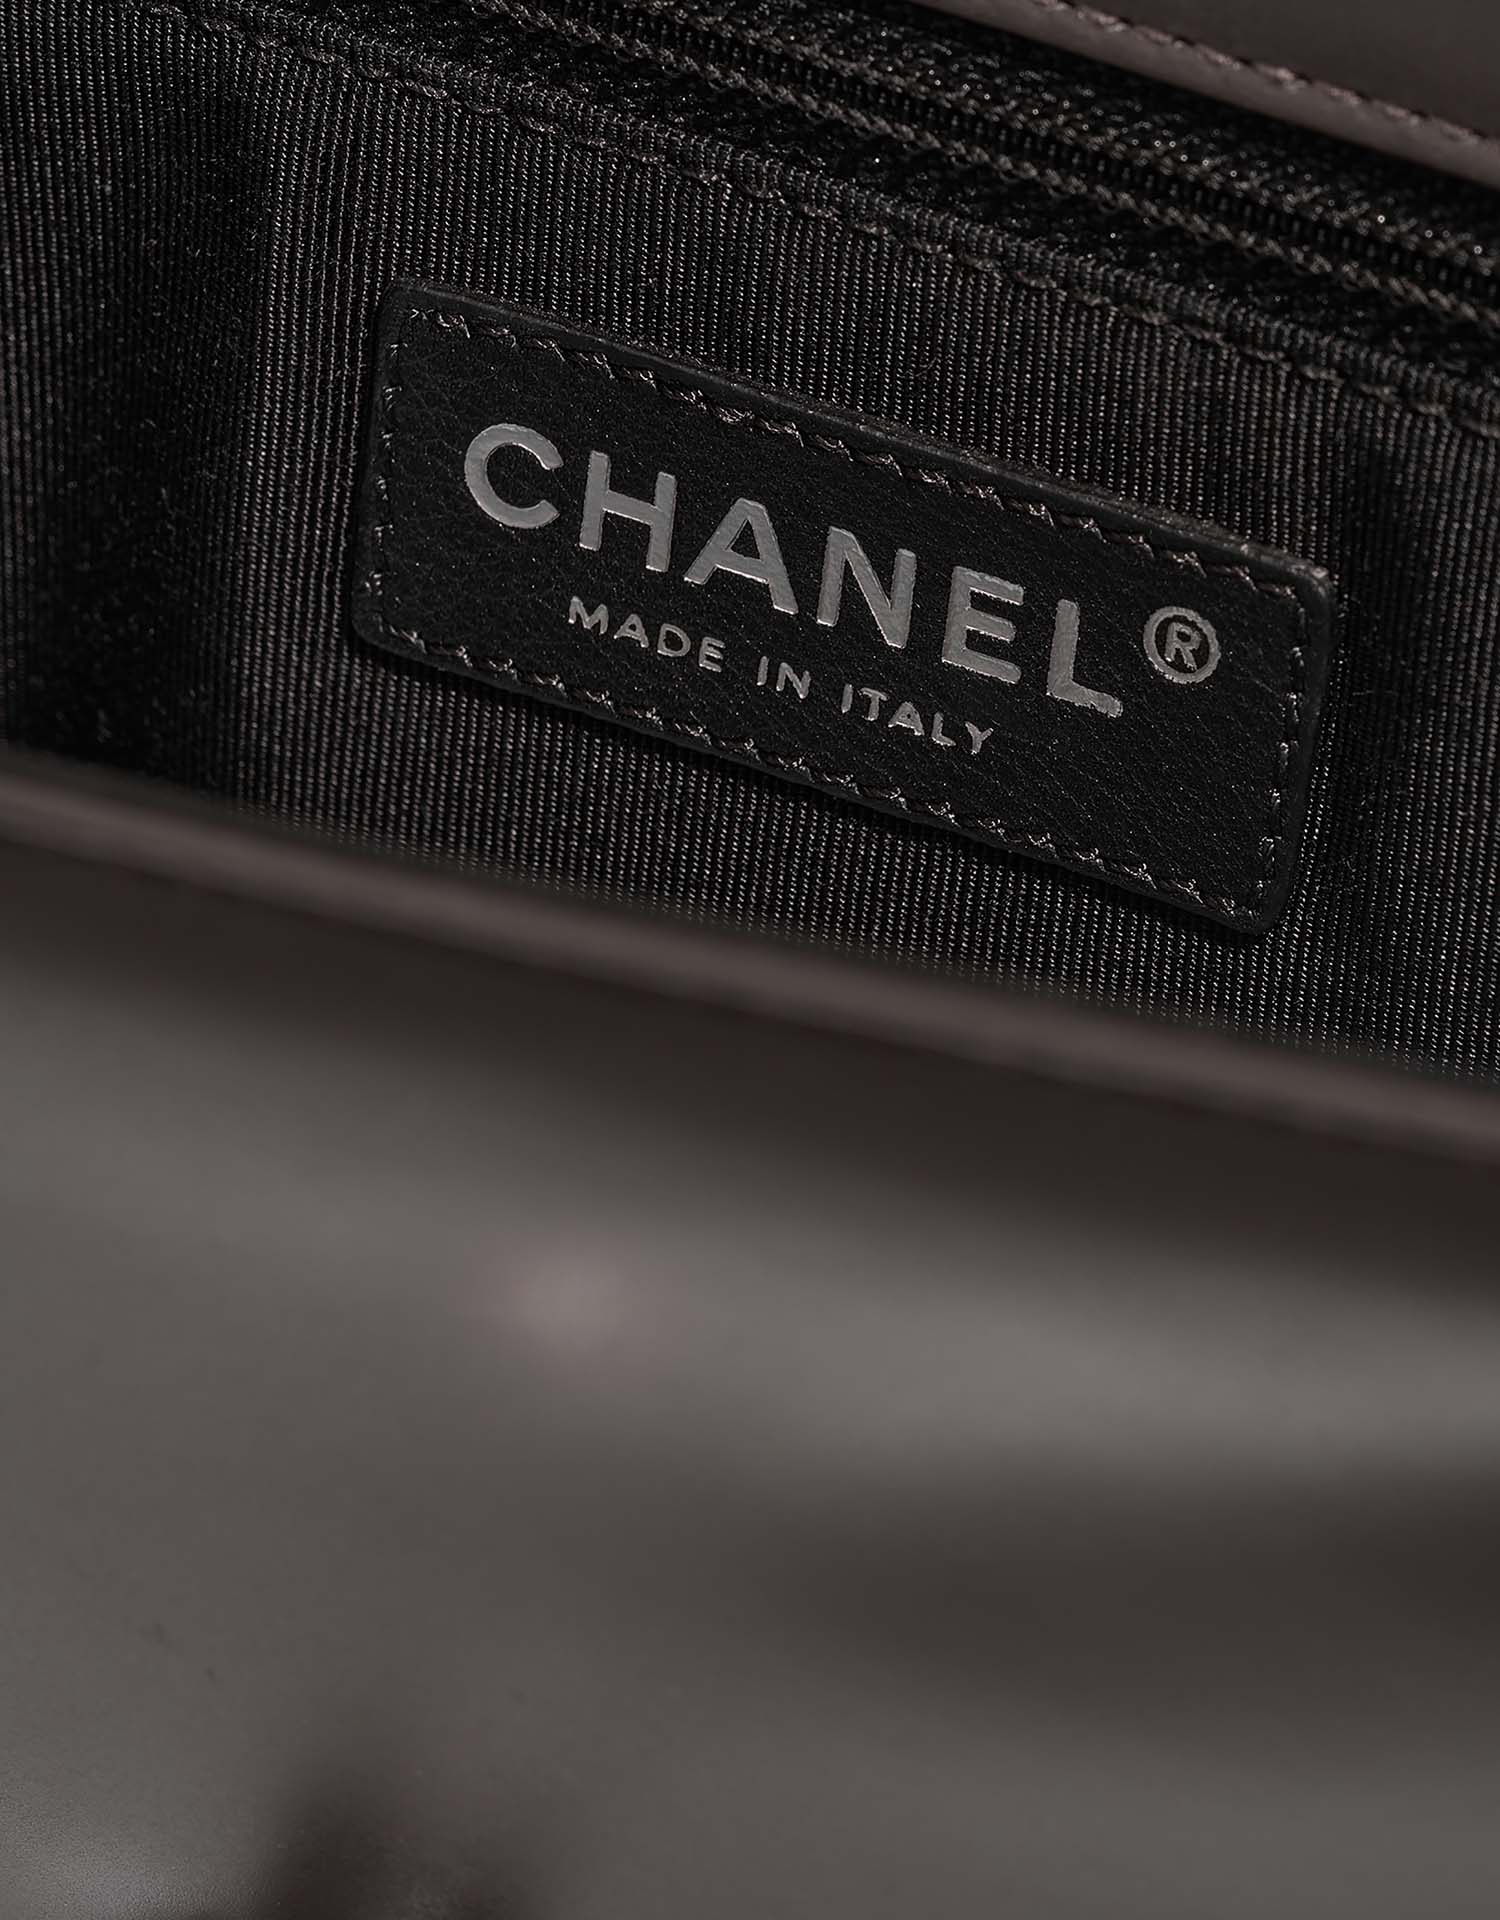 Chanel Boy OldMedium Schwarz-Grau Logo | Verkaufen Sie Ihre Designer-Tasche auf Saclab.com